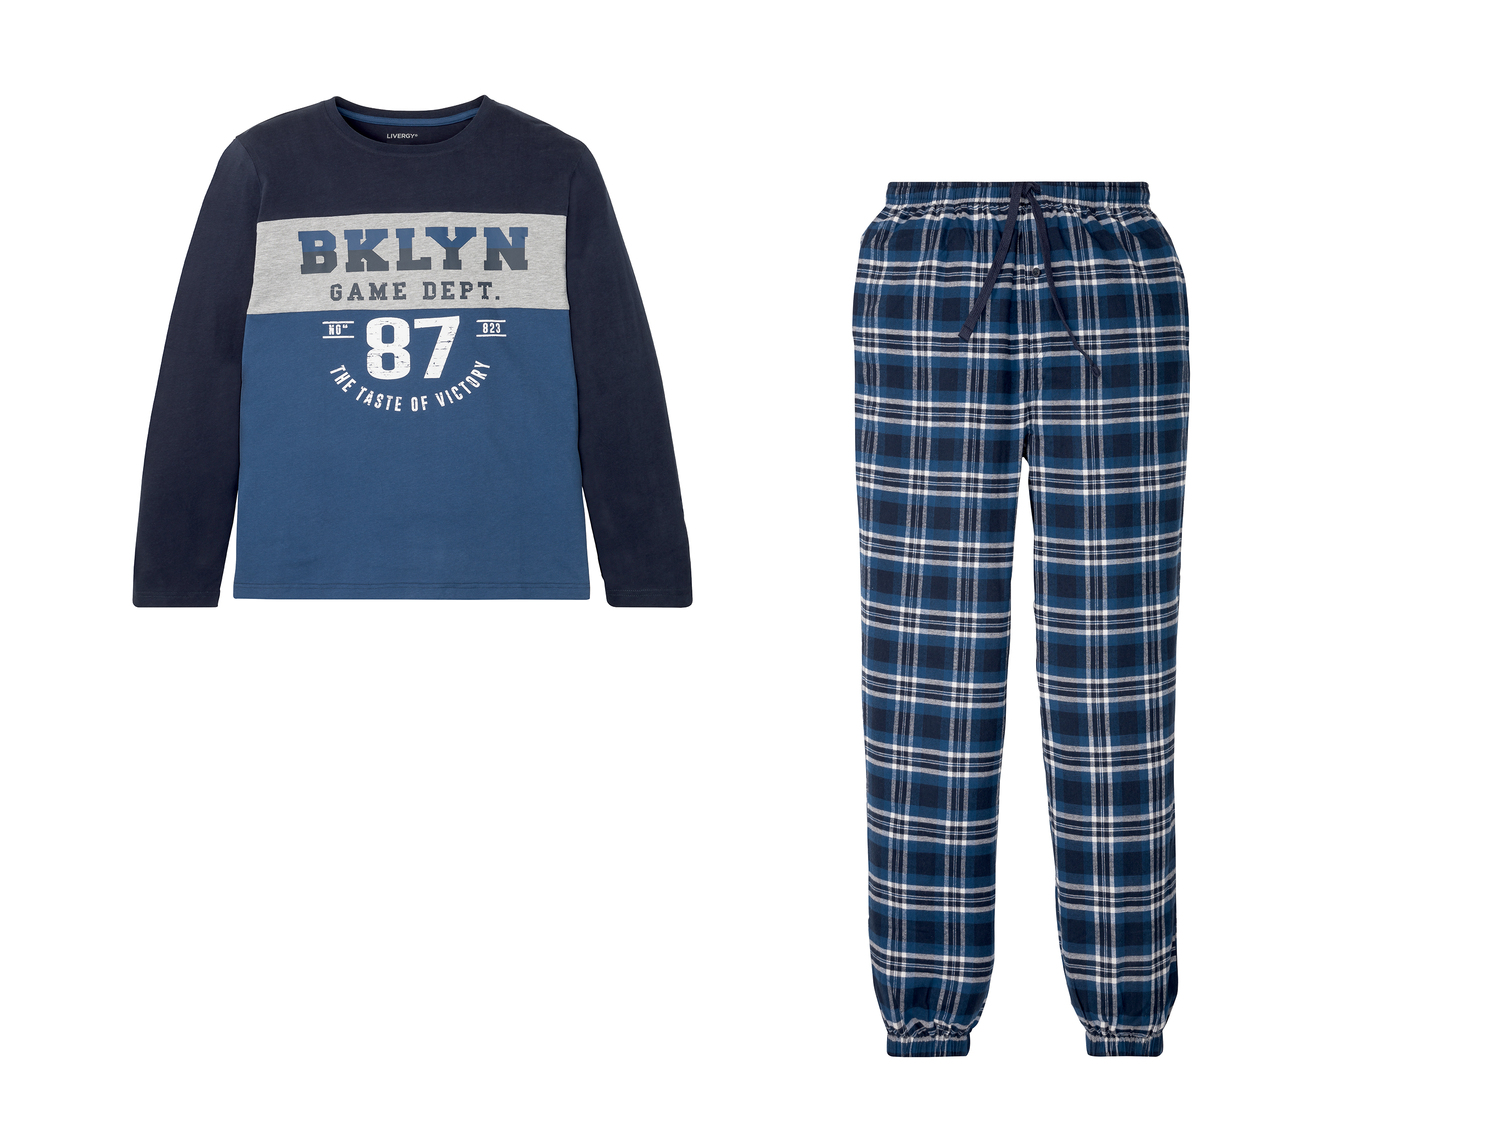 Pyjama homme , le prix 11.99 &#8364; 
- Du S au XL selon mod&egrave;le.
- ...